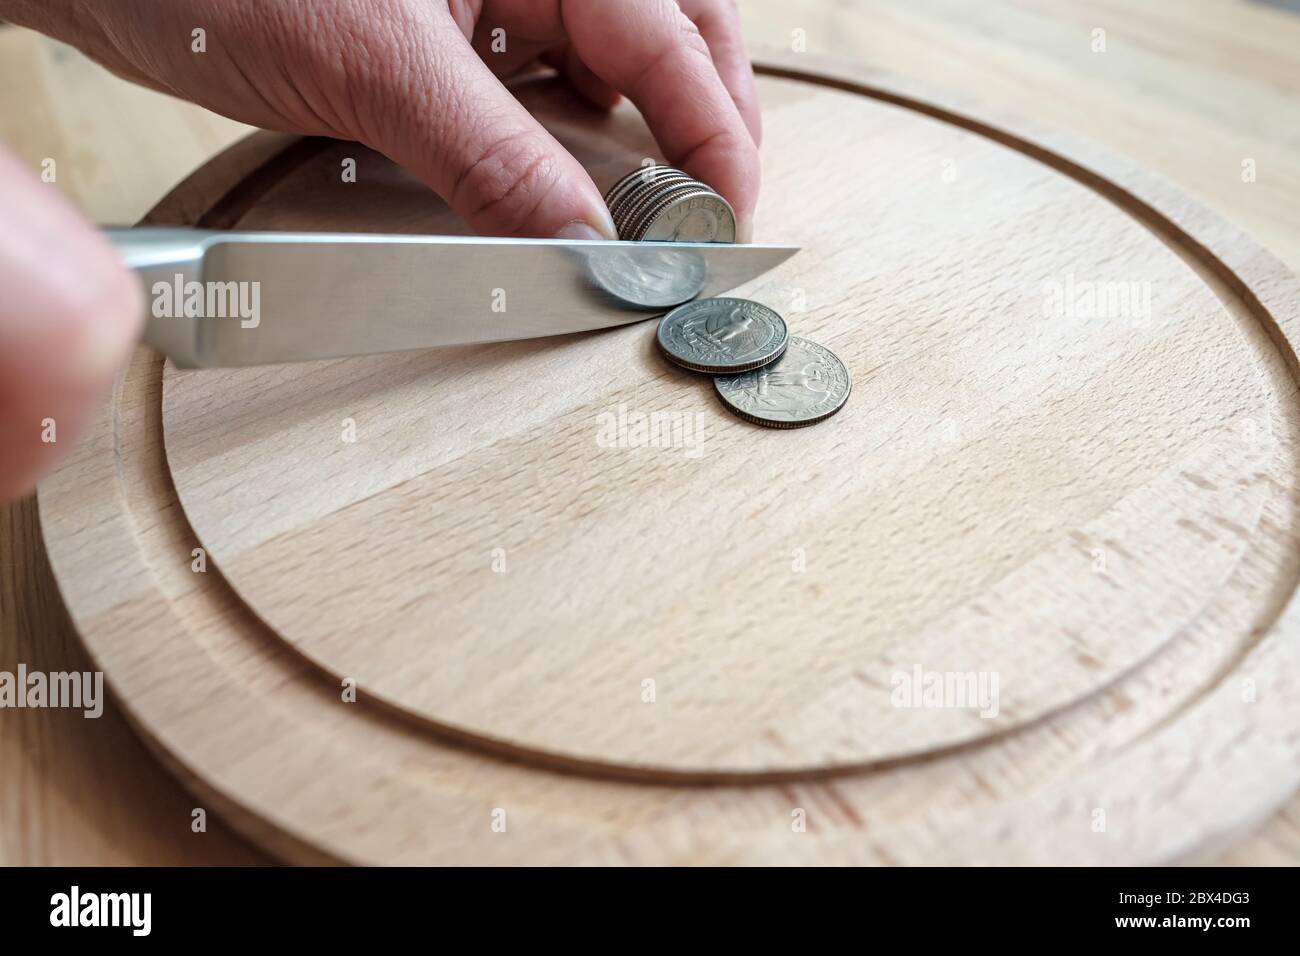 Le mani tagliano le monete del dollaro con un coltello, separandole come pezzi di cibo su un tagliere. Concetto di tasse, frode o profitto. Foto Stock